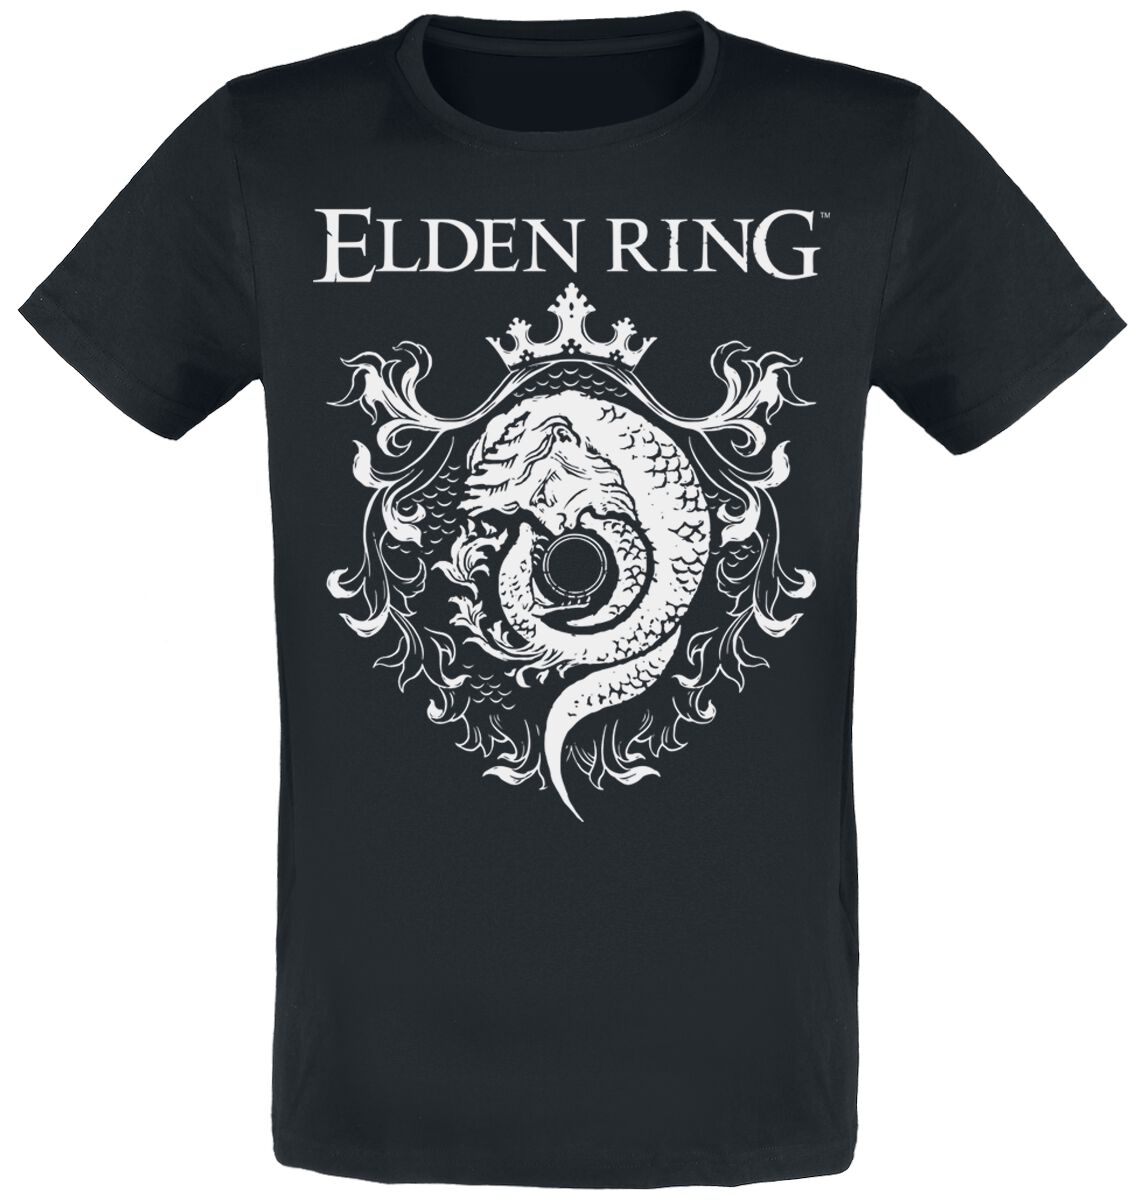 Elden Ring - Gaming T-Shirt - Crest - S bis XXL - für Männer - Größe M - schwarz  - EMP exklusives Merchandise!